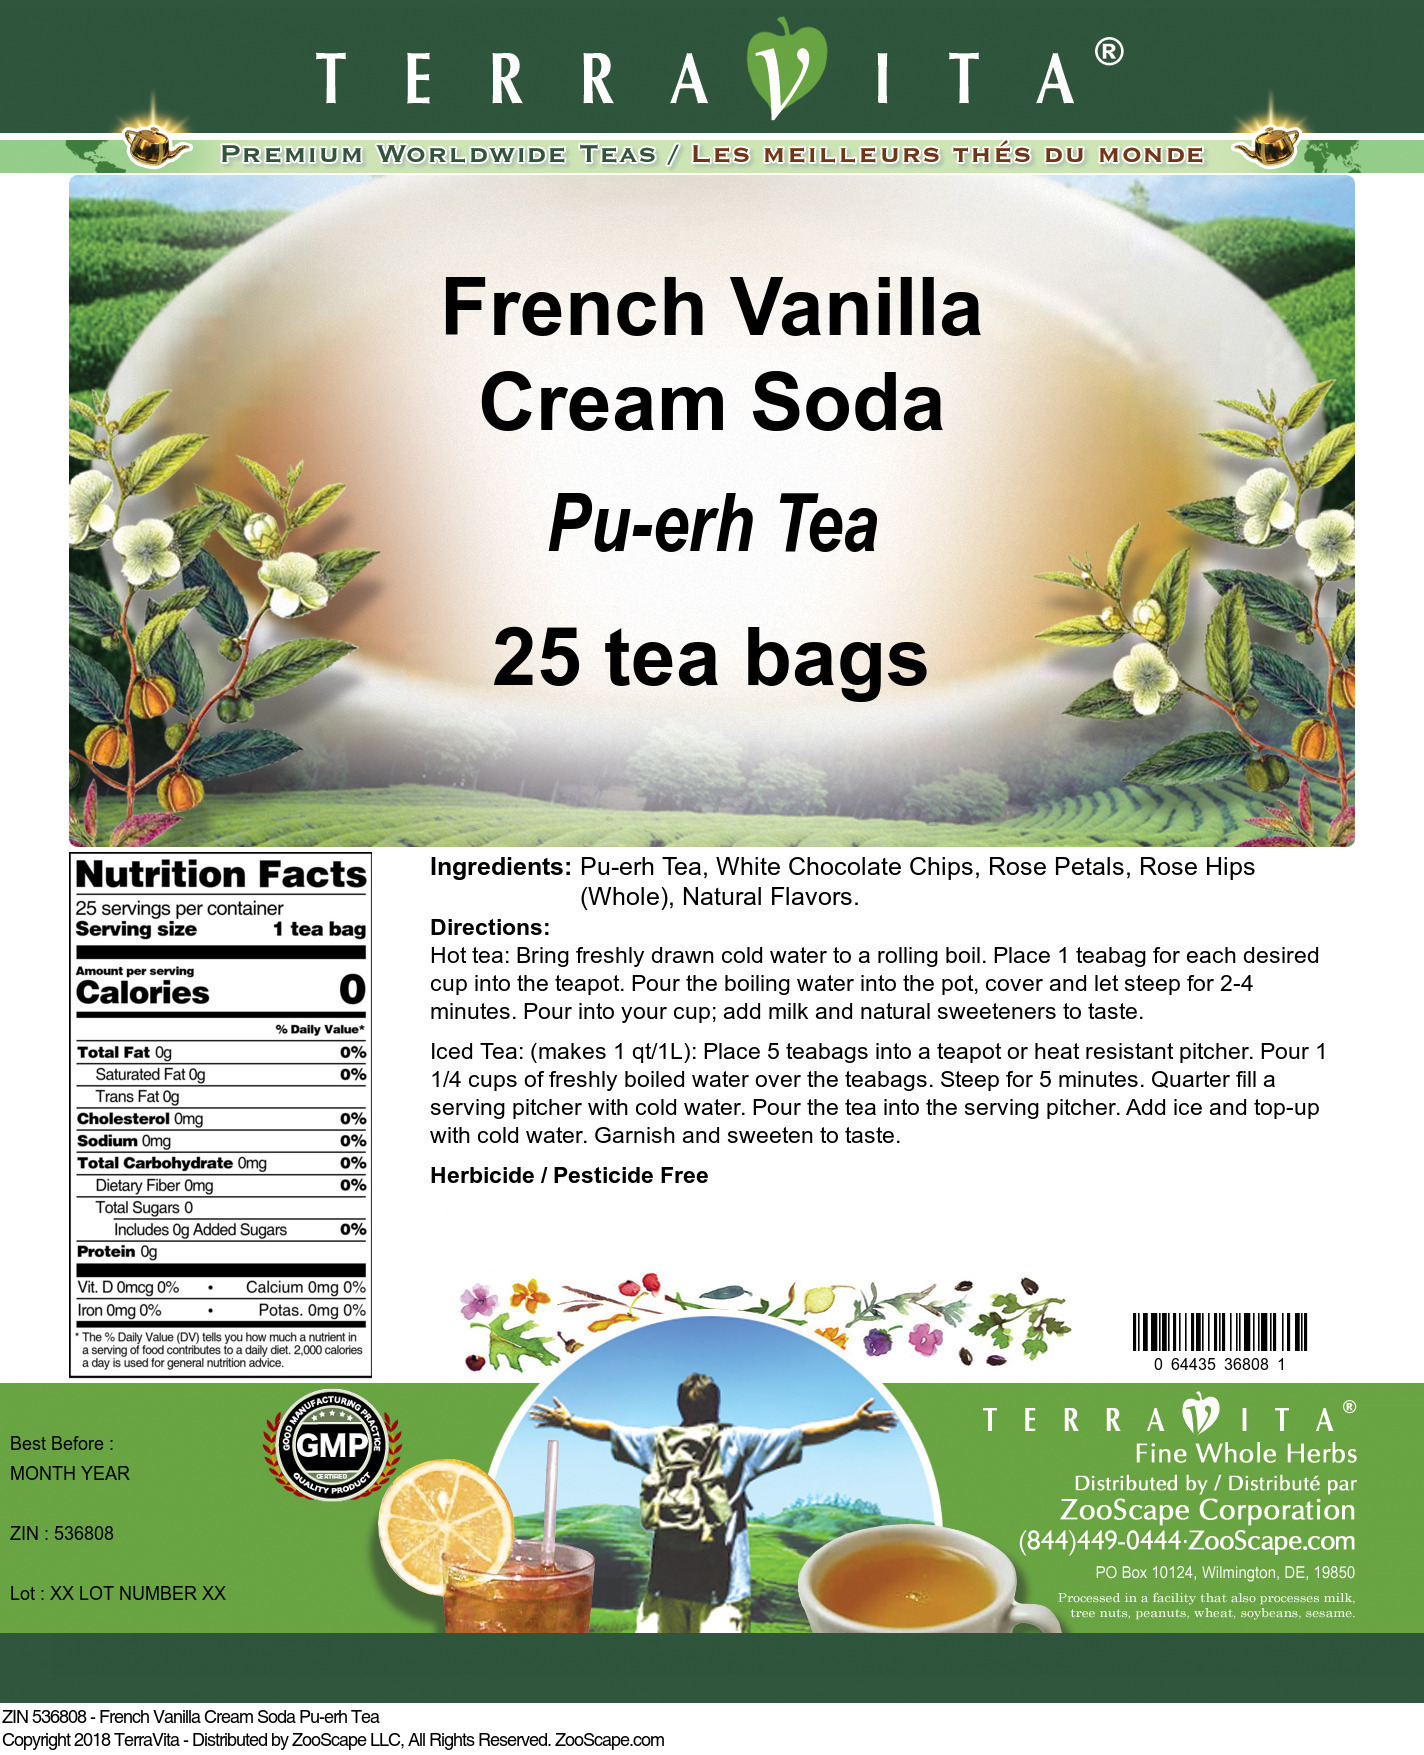 French Vanilla Cream Soda Pu-erh Tea - Label